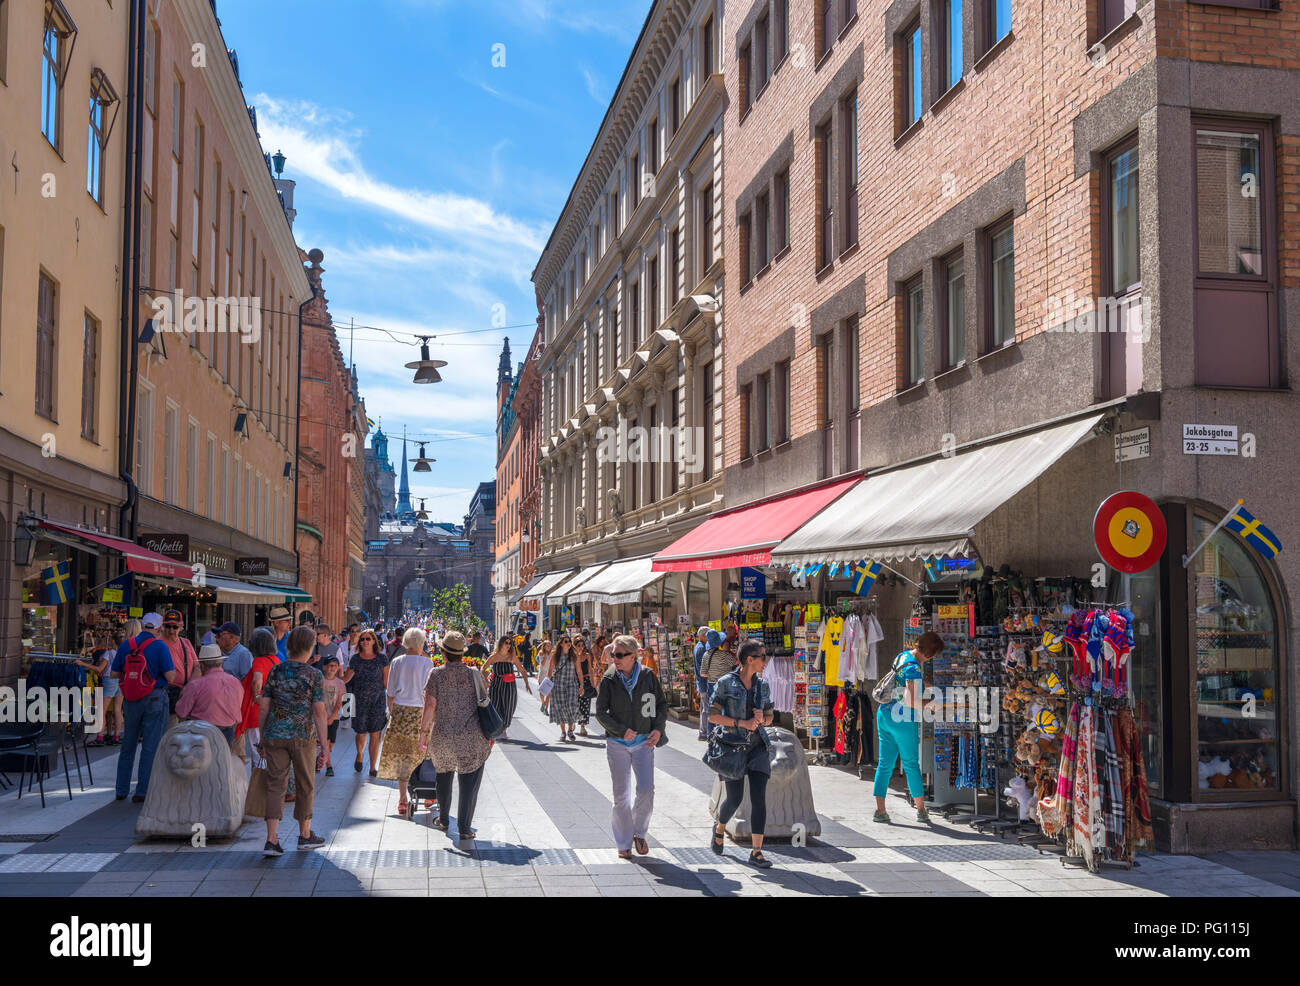 Magasins et boutiques sur l'animée Drottninggatan, une rue commerçante du centre-ville, Norrmalm, Stockholm, Suède Banque D'Images